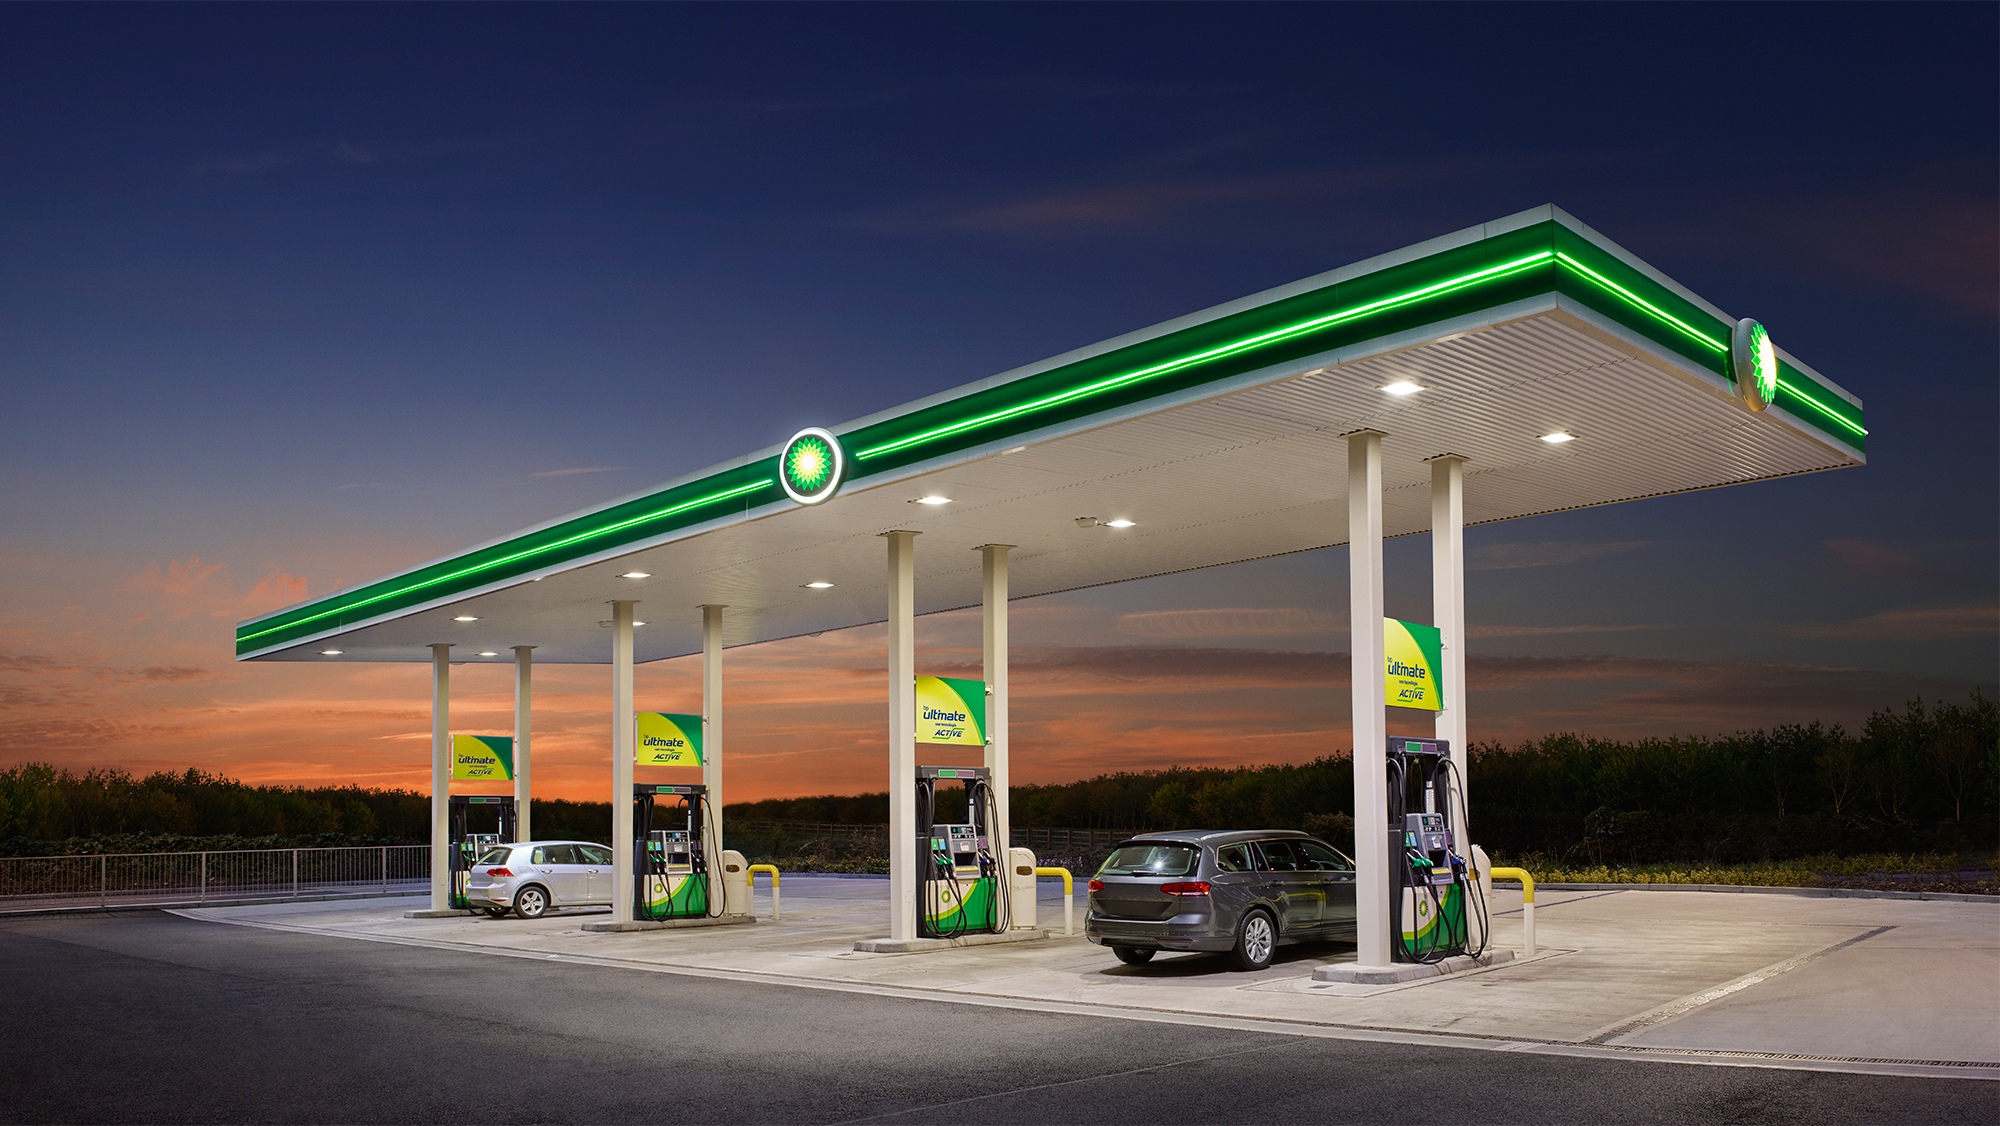 App de BP llega a México, permitirá localizar gasolineras y facturar compras